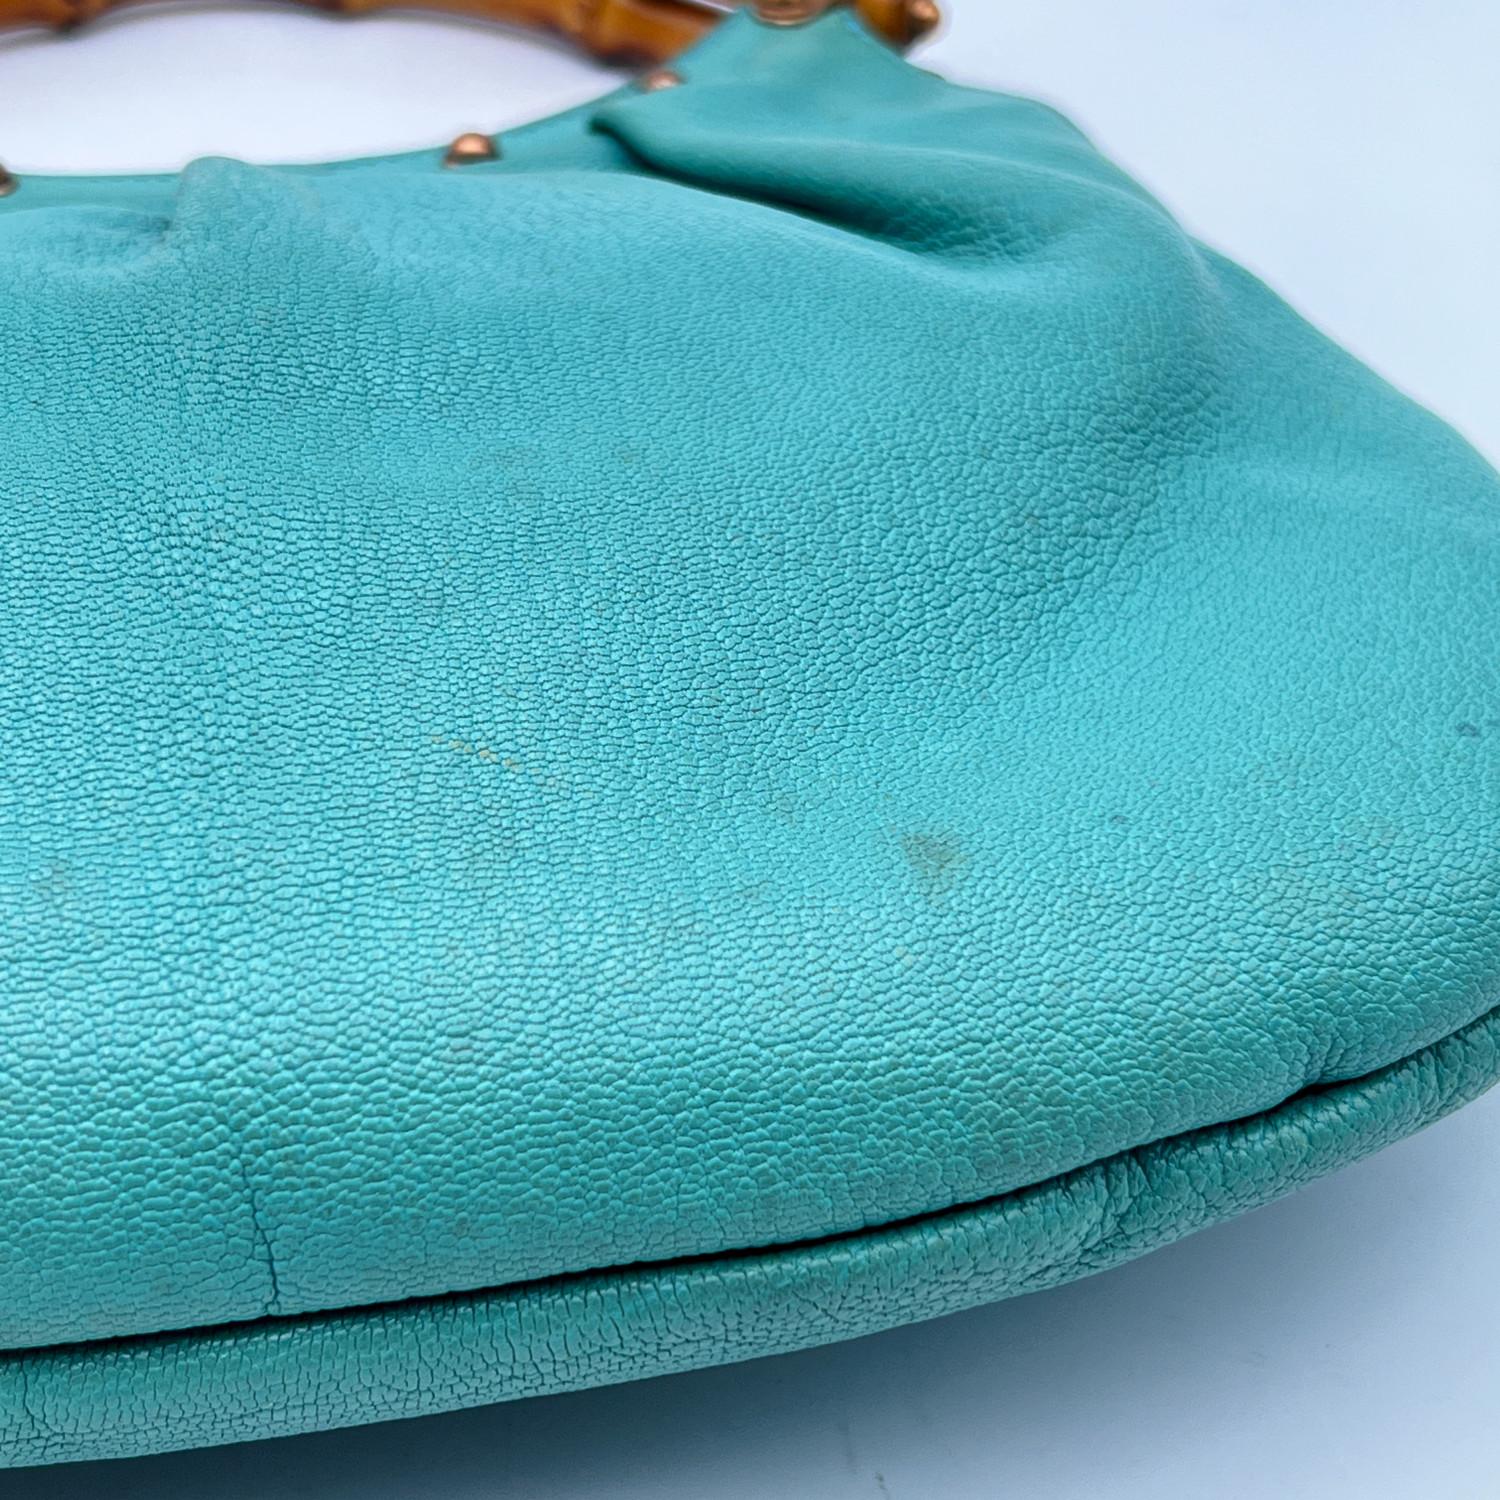 Gucci Turquoise Leather Bamboo Studded Handbag Tote Bag 3